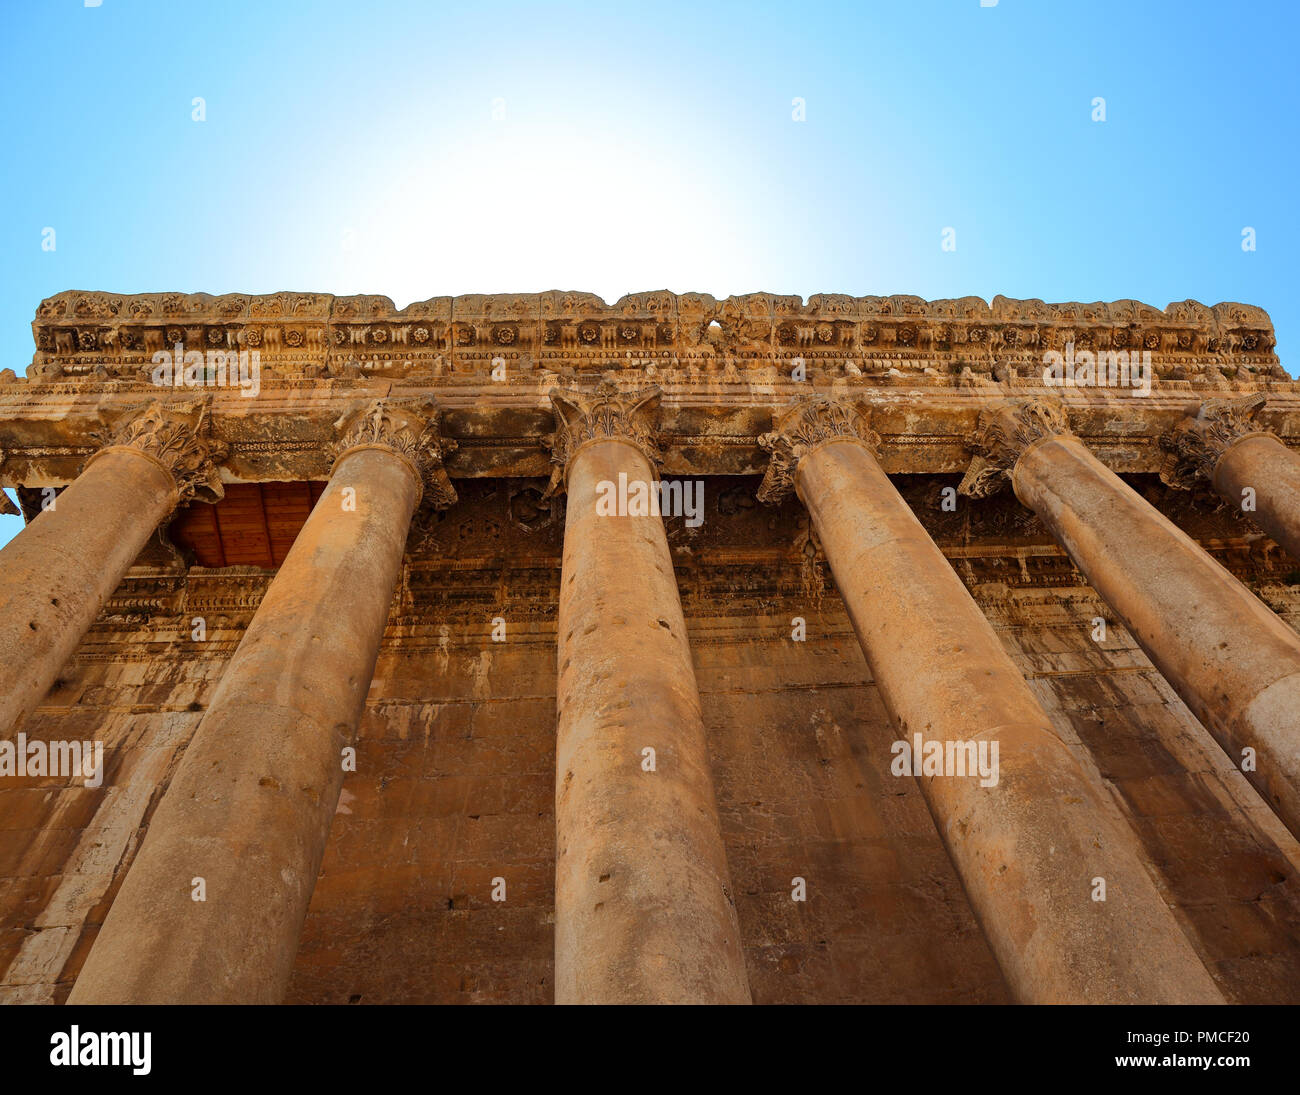 Ruines Romaines de Baalbek, au Liban Banque D'Images